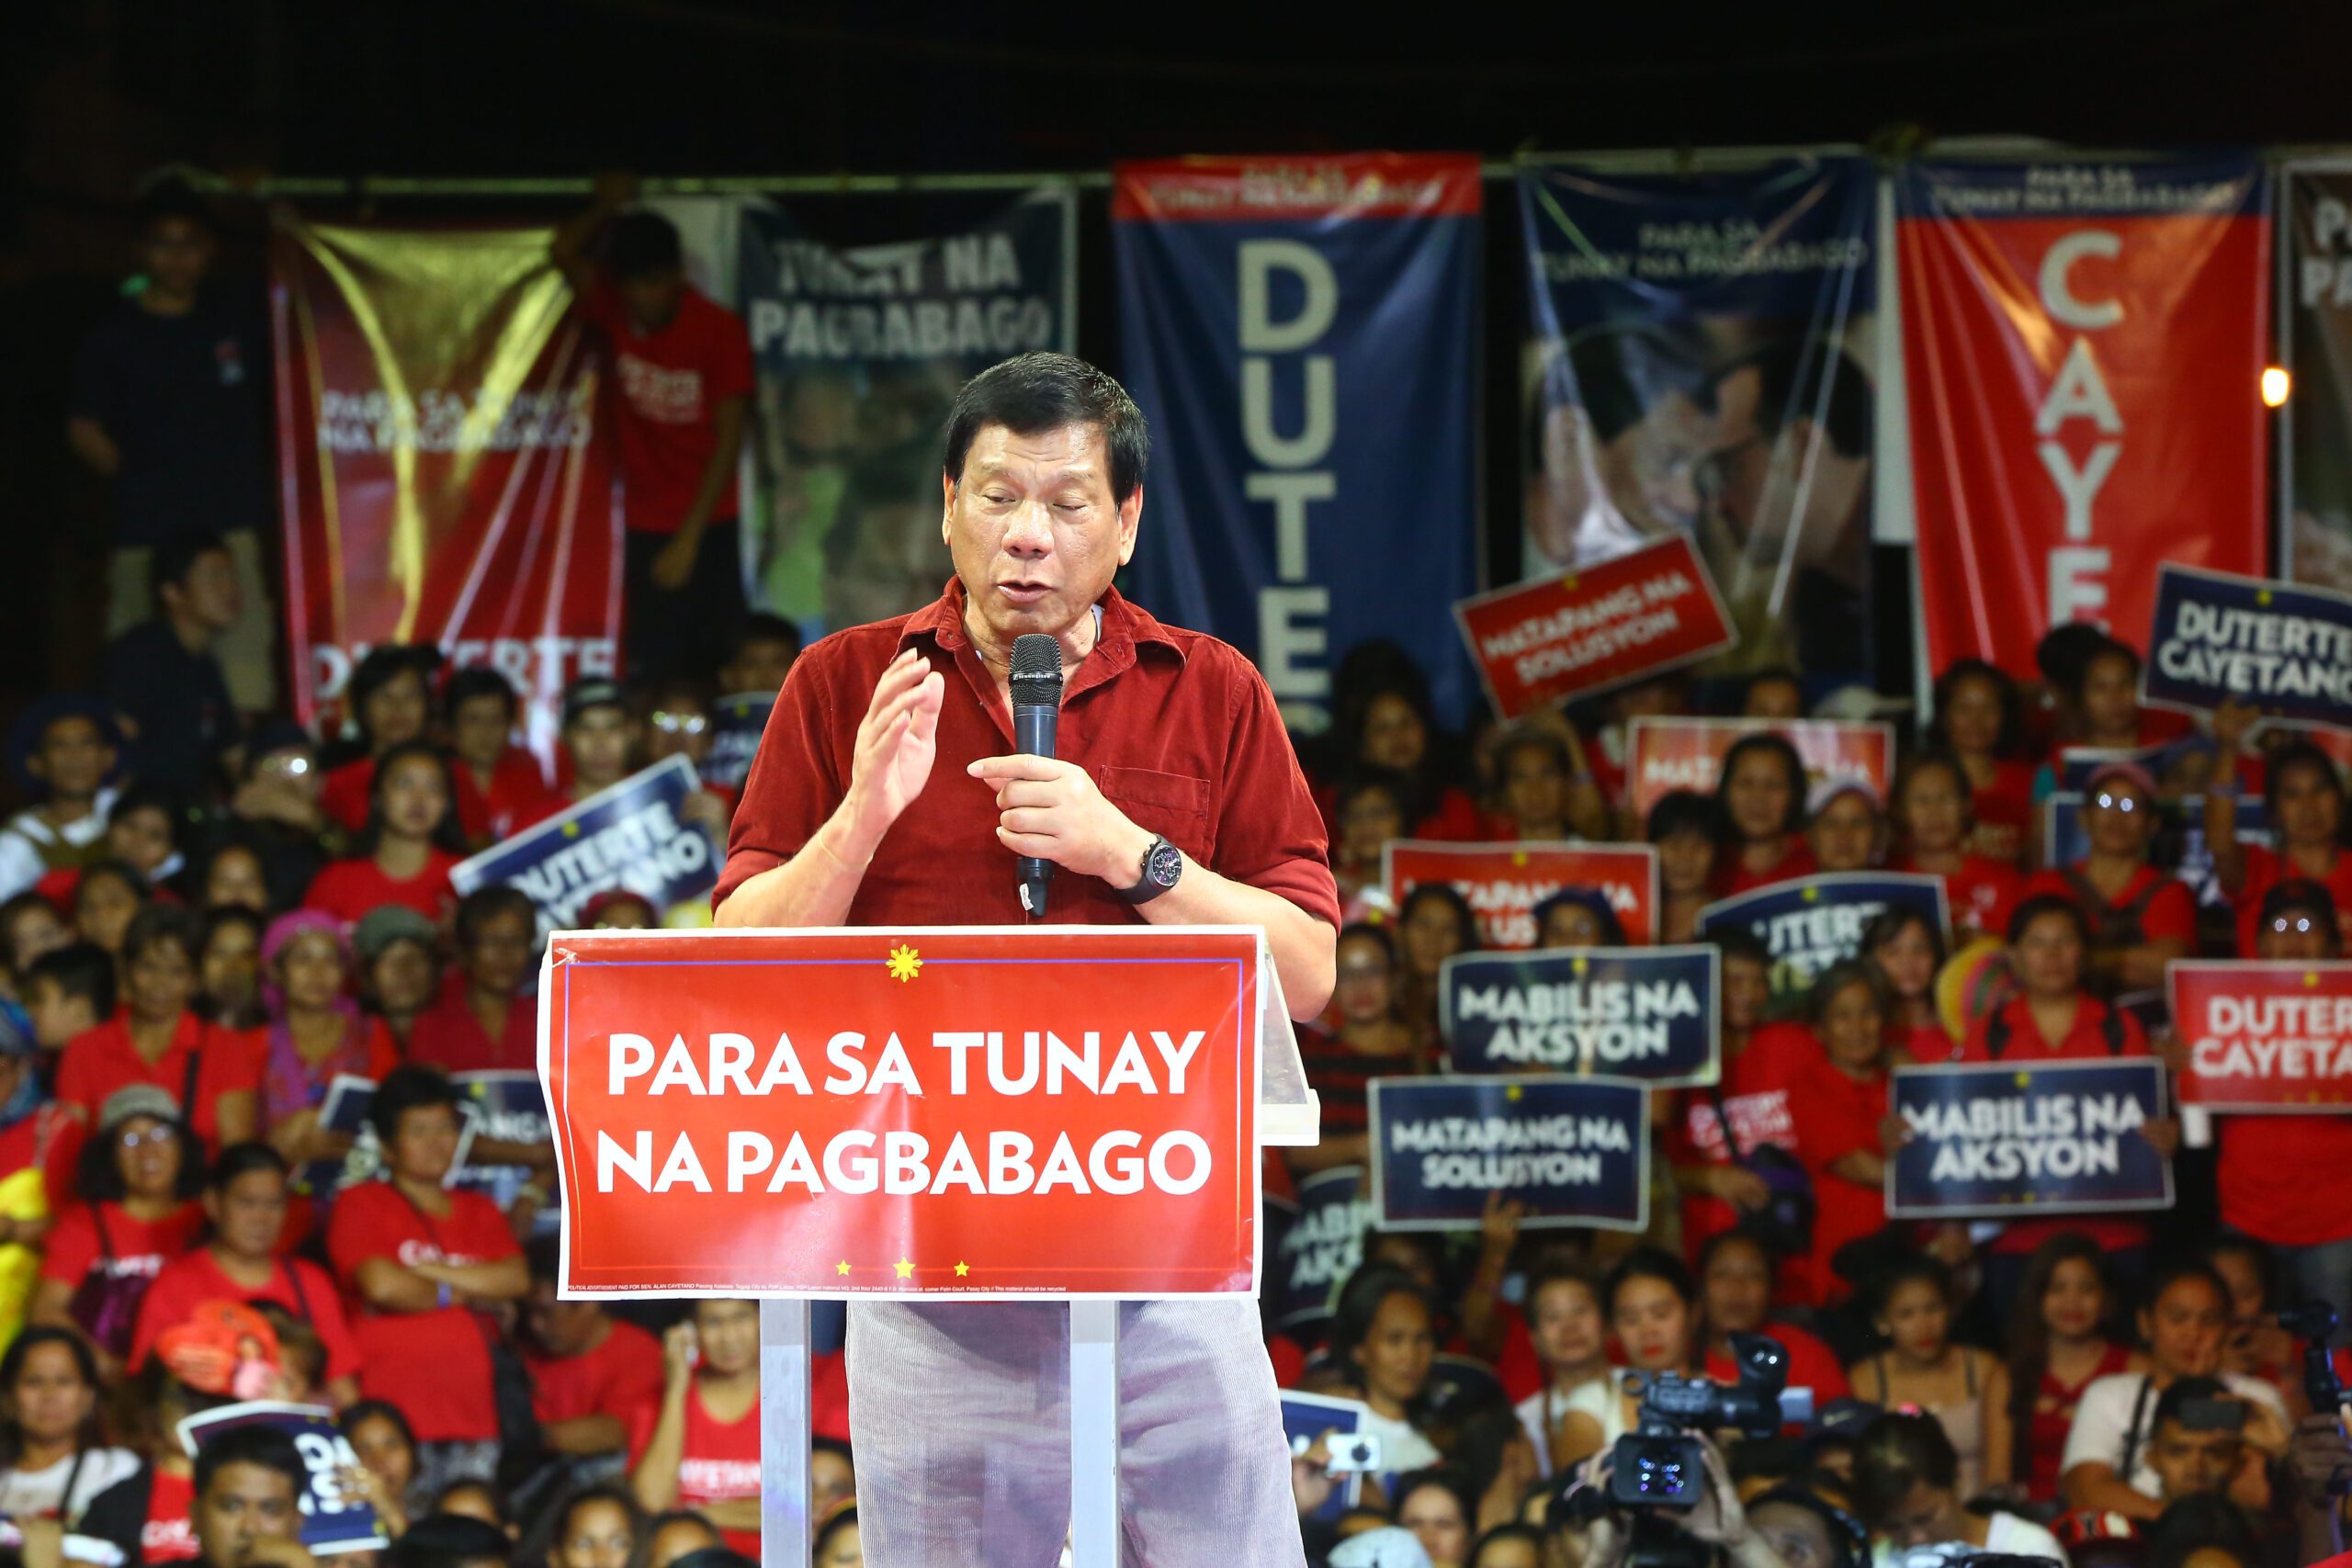 Duterte to create economic zones, build food terminals